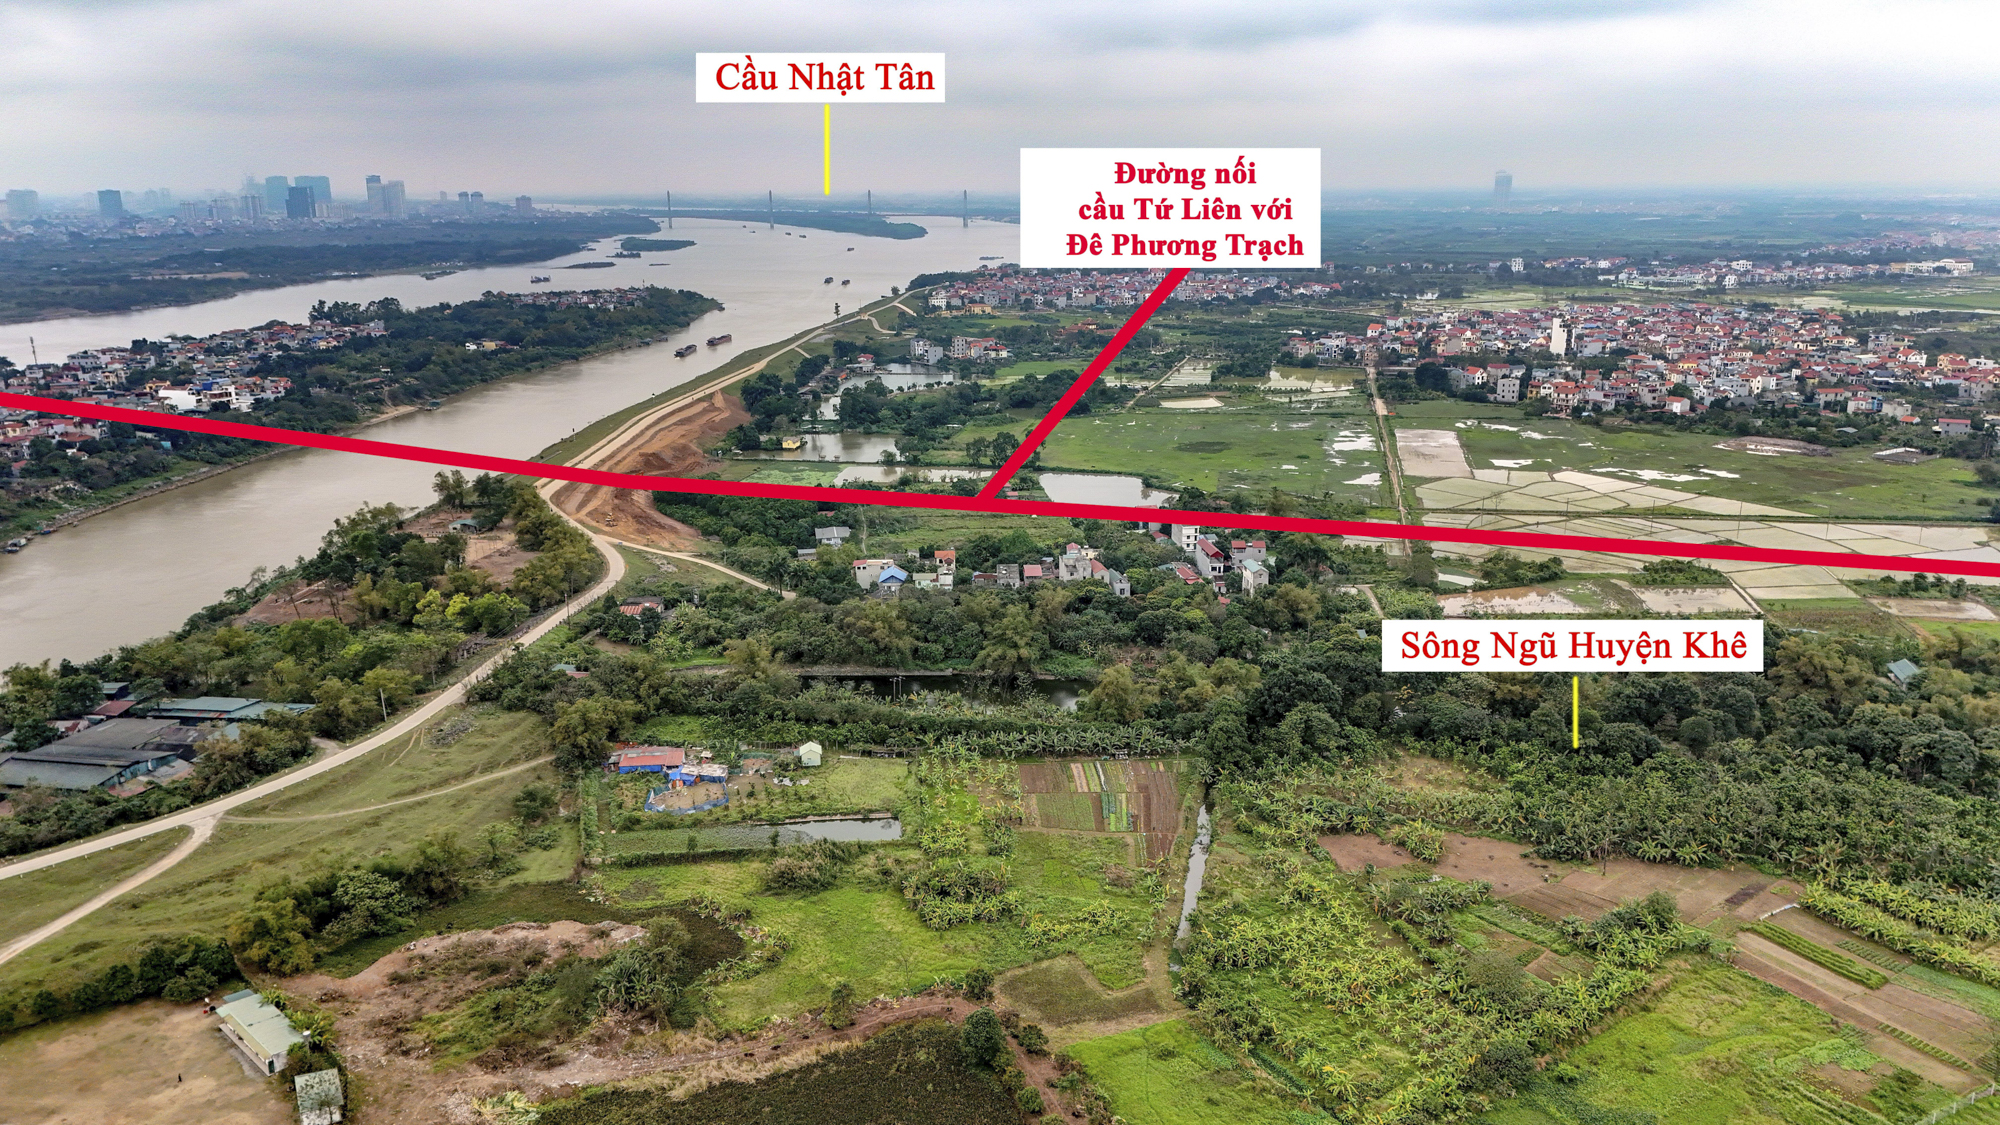 Khu vực  sắp được xây cầu 20.000 tỷ đồng vượt 2 con sông lớn, đi qua đại dự án của Vinhomes ở Hà Nội- Ảnh 6.